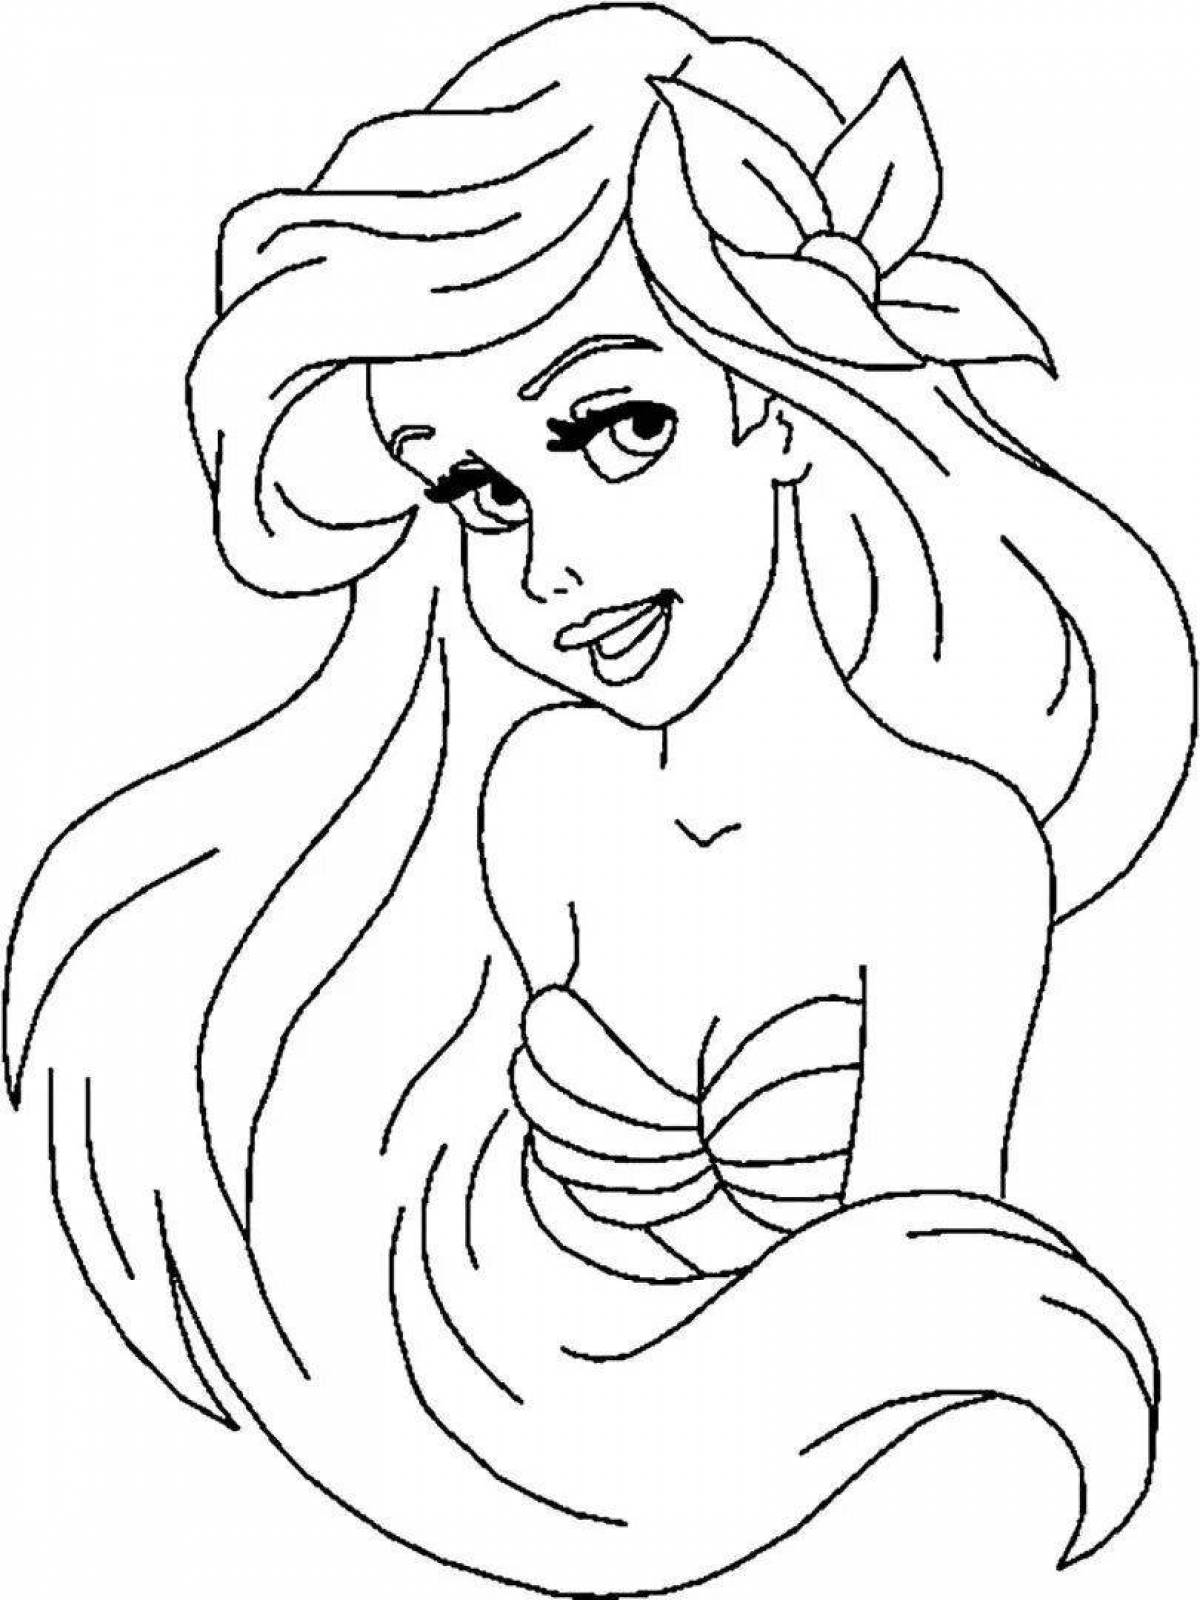 Sparkle coloring princess ariel the little mermaid